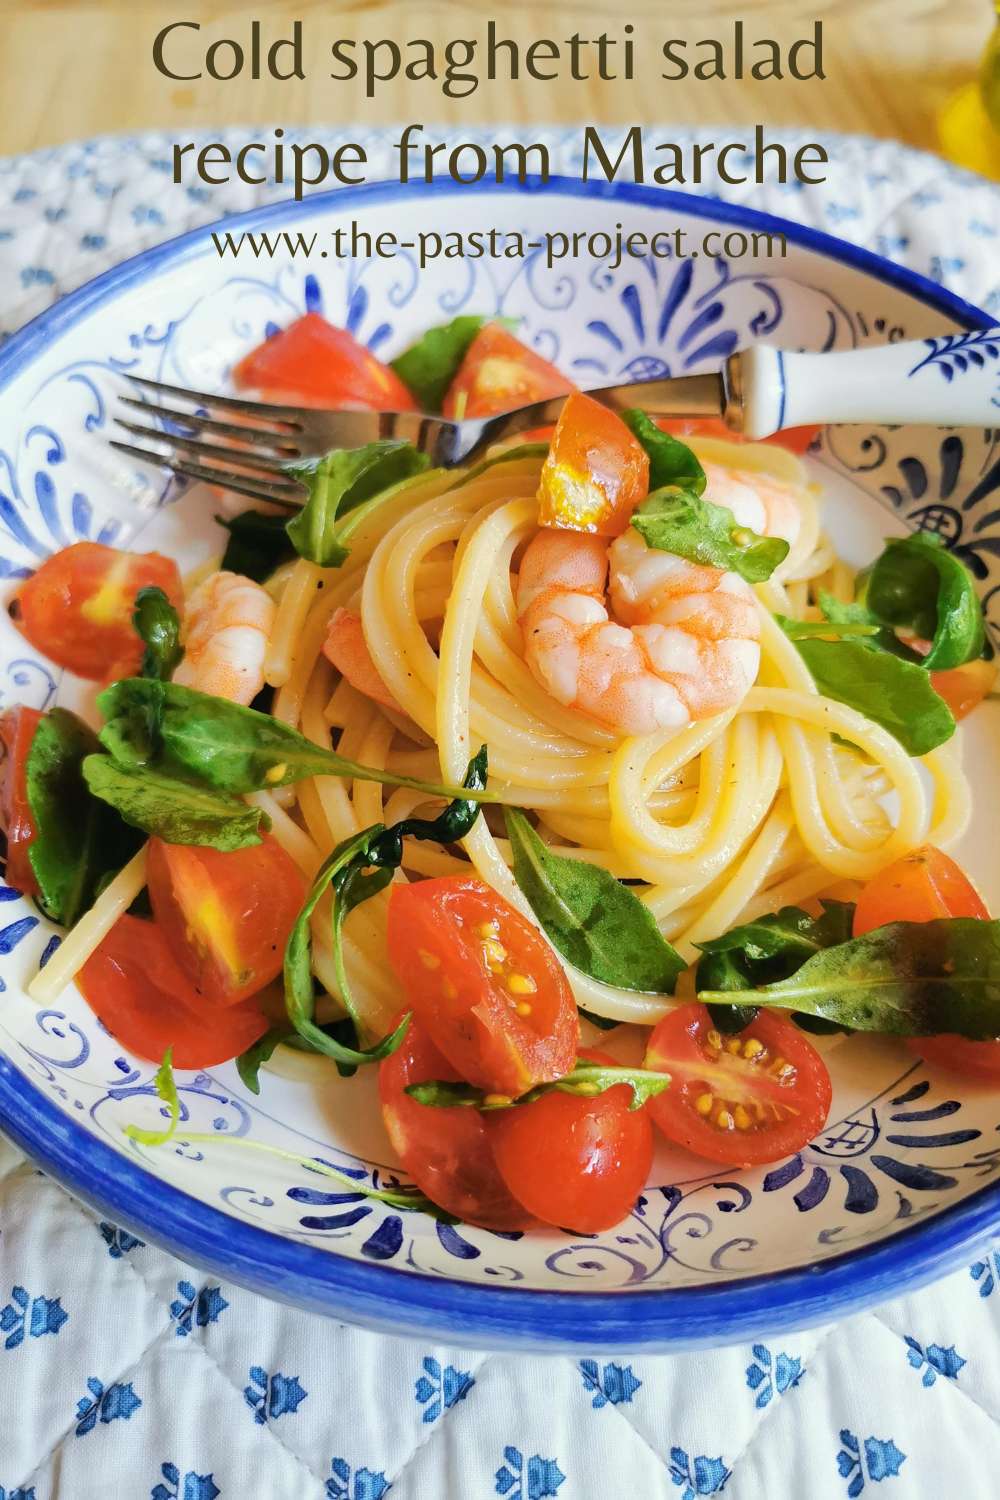 Italian cold spaghetti salad with shrimp recipe from Marche